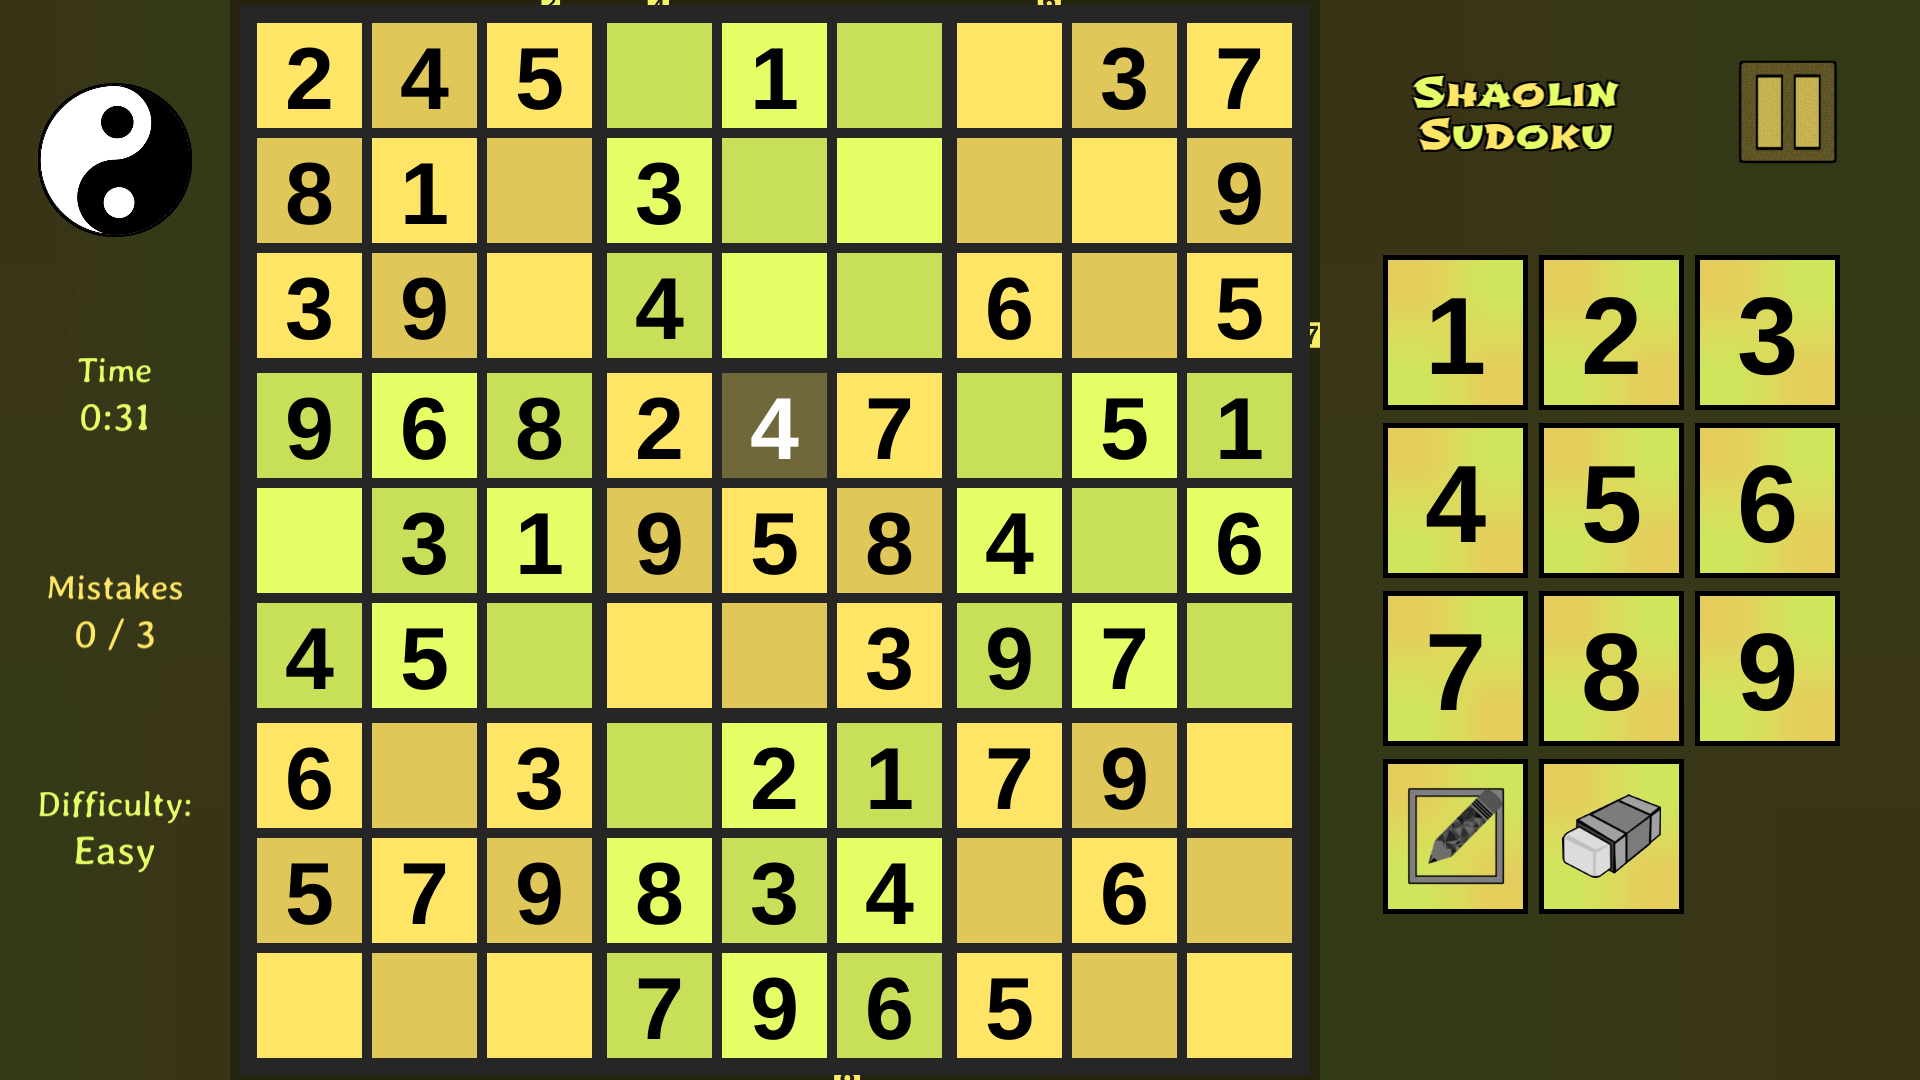 Shaolin Sudoku